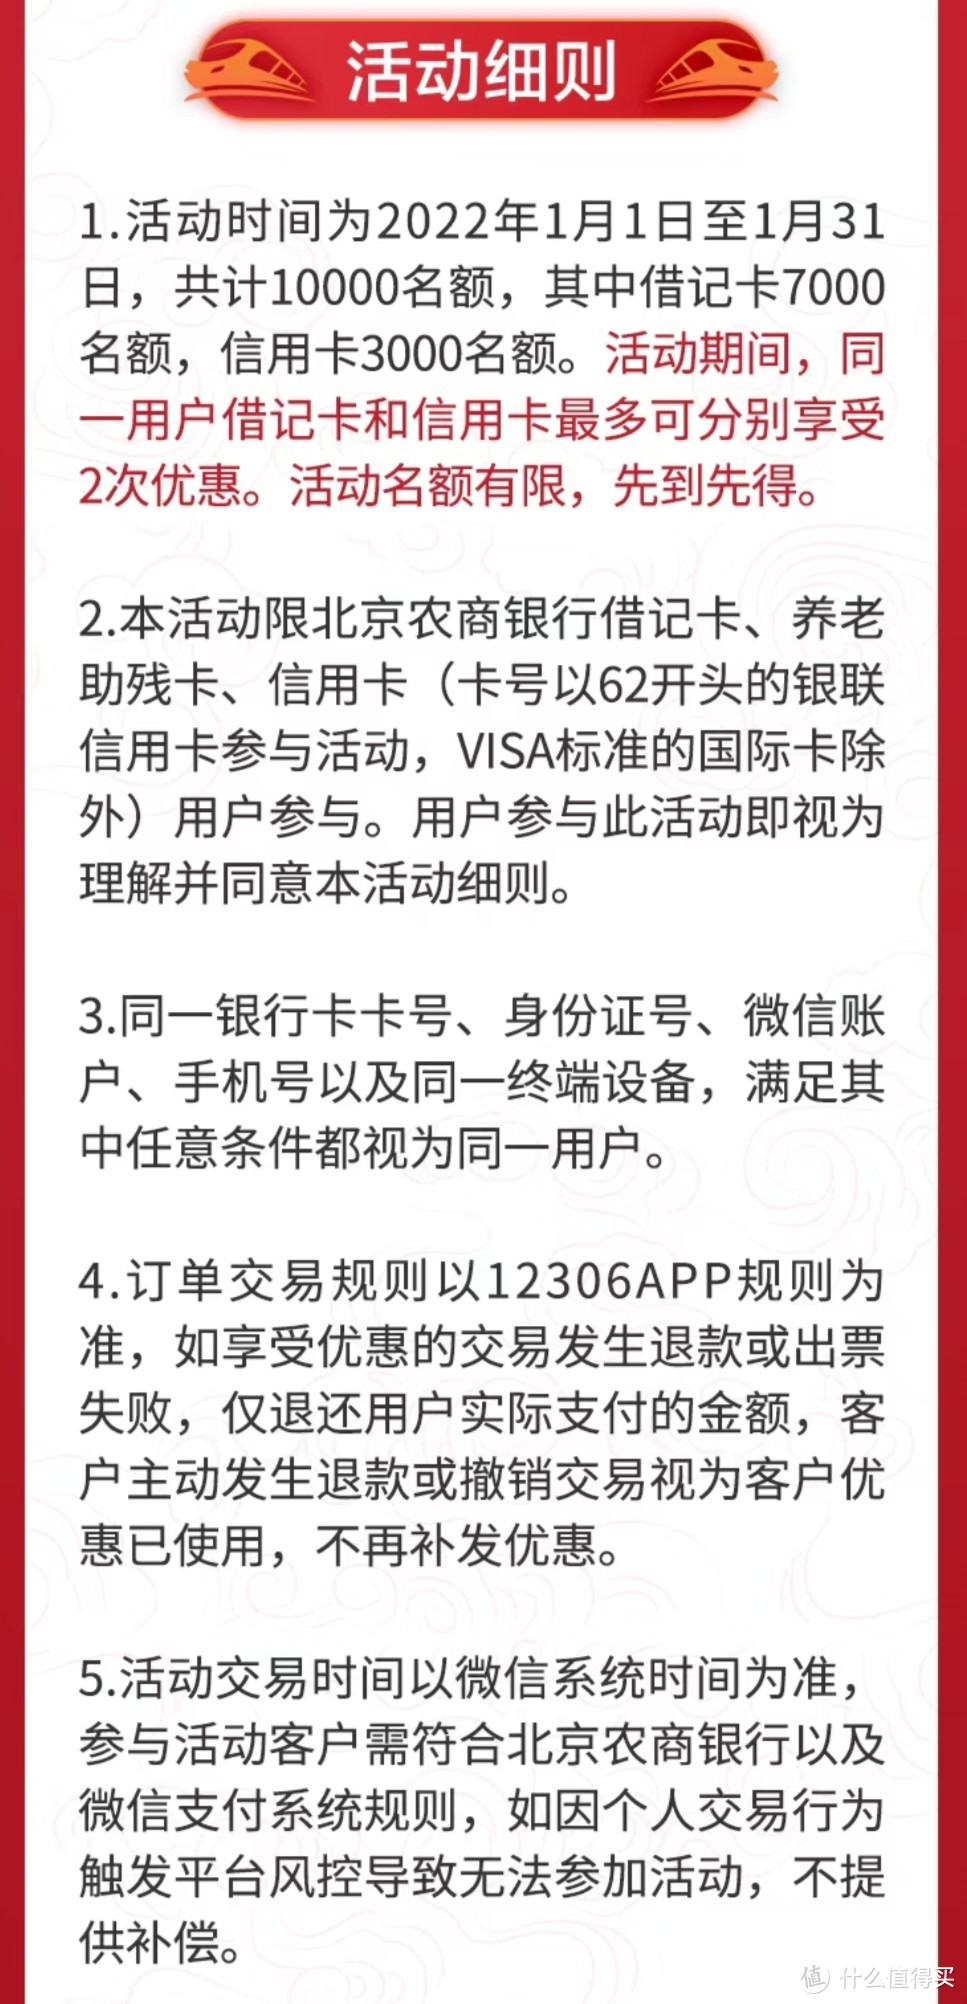 北京农商银行火车票立减20